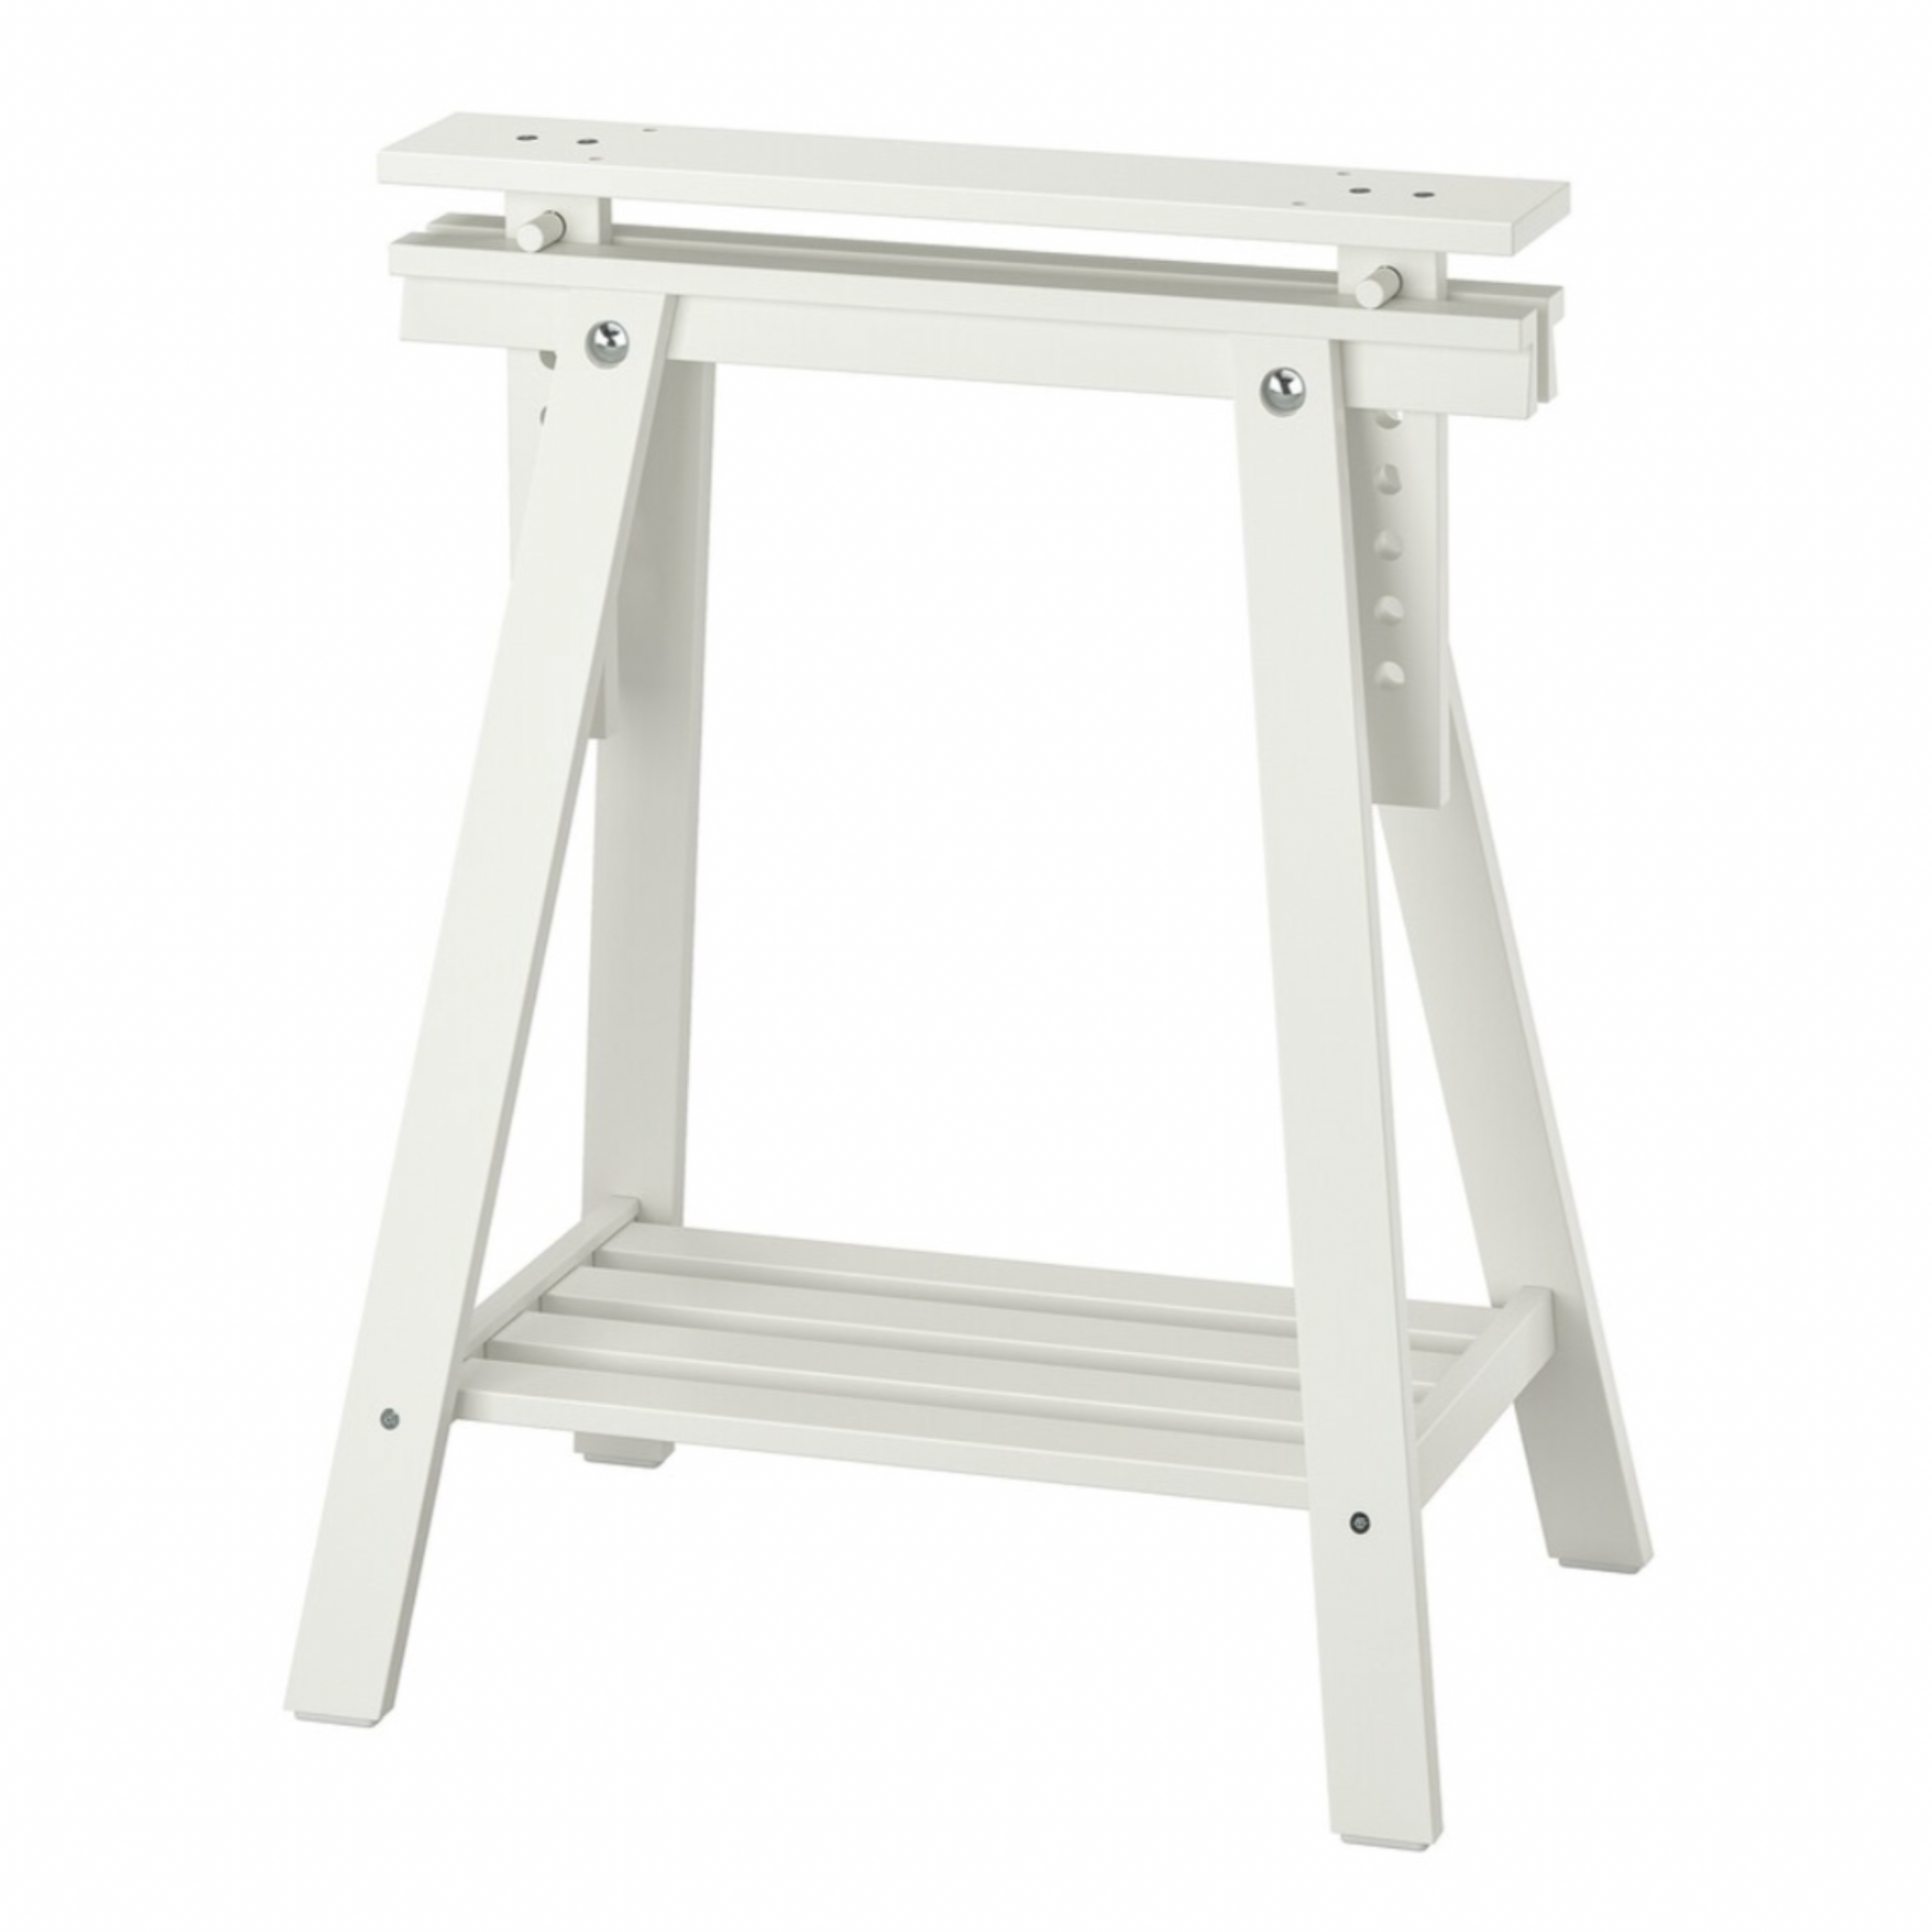 Ikea Lagkapten / Mittback Desk Combo, 120x60x73-96cm, White (8130982314271)